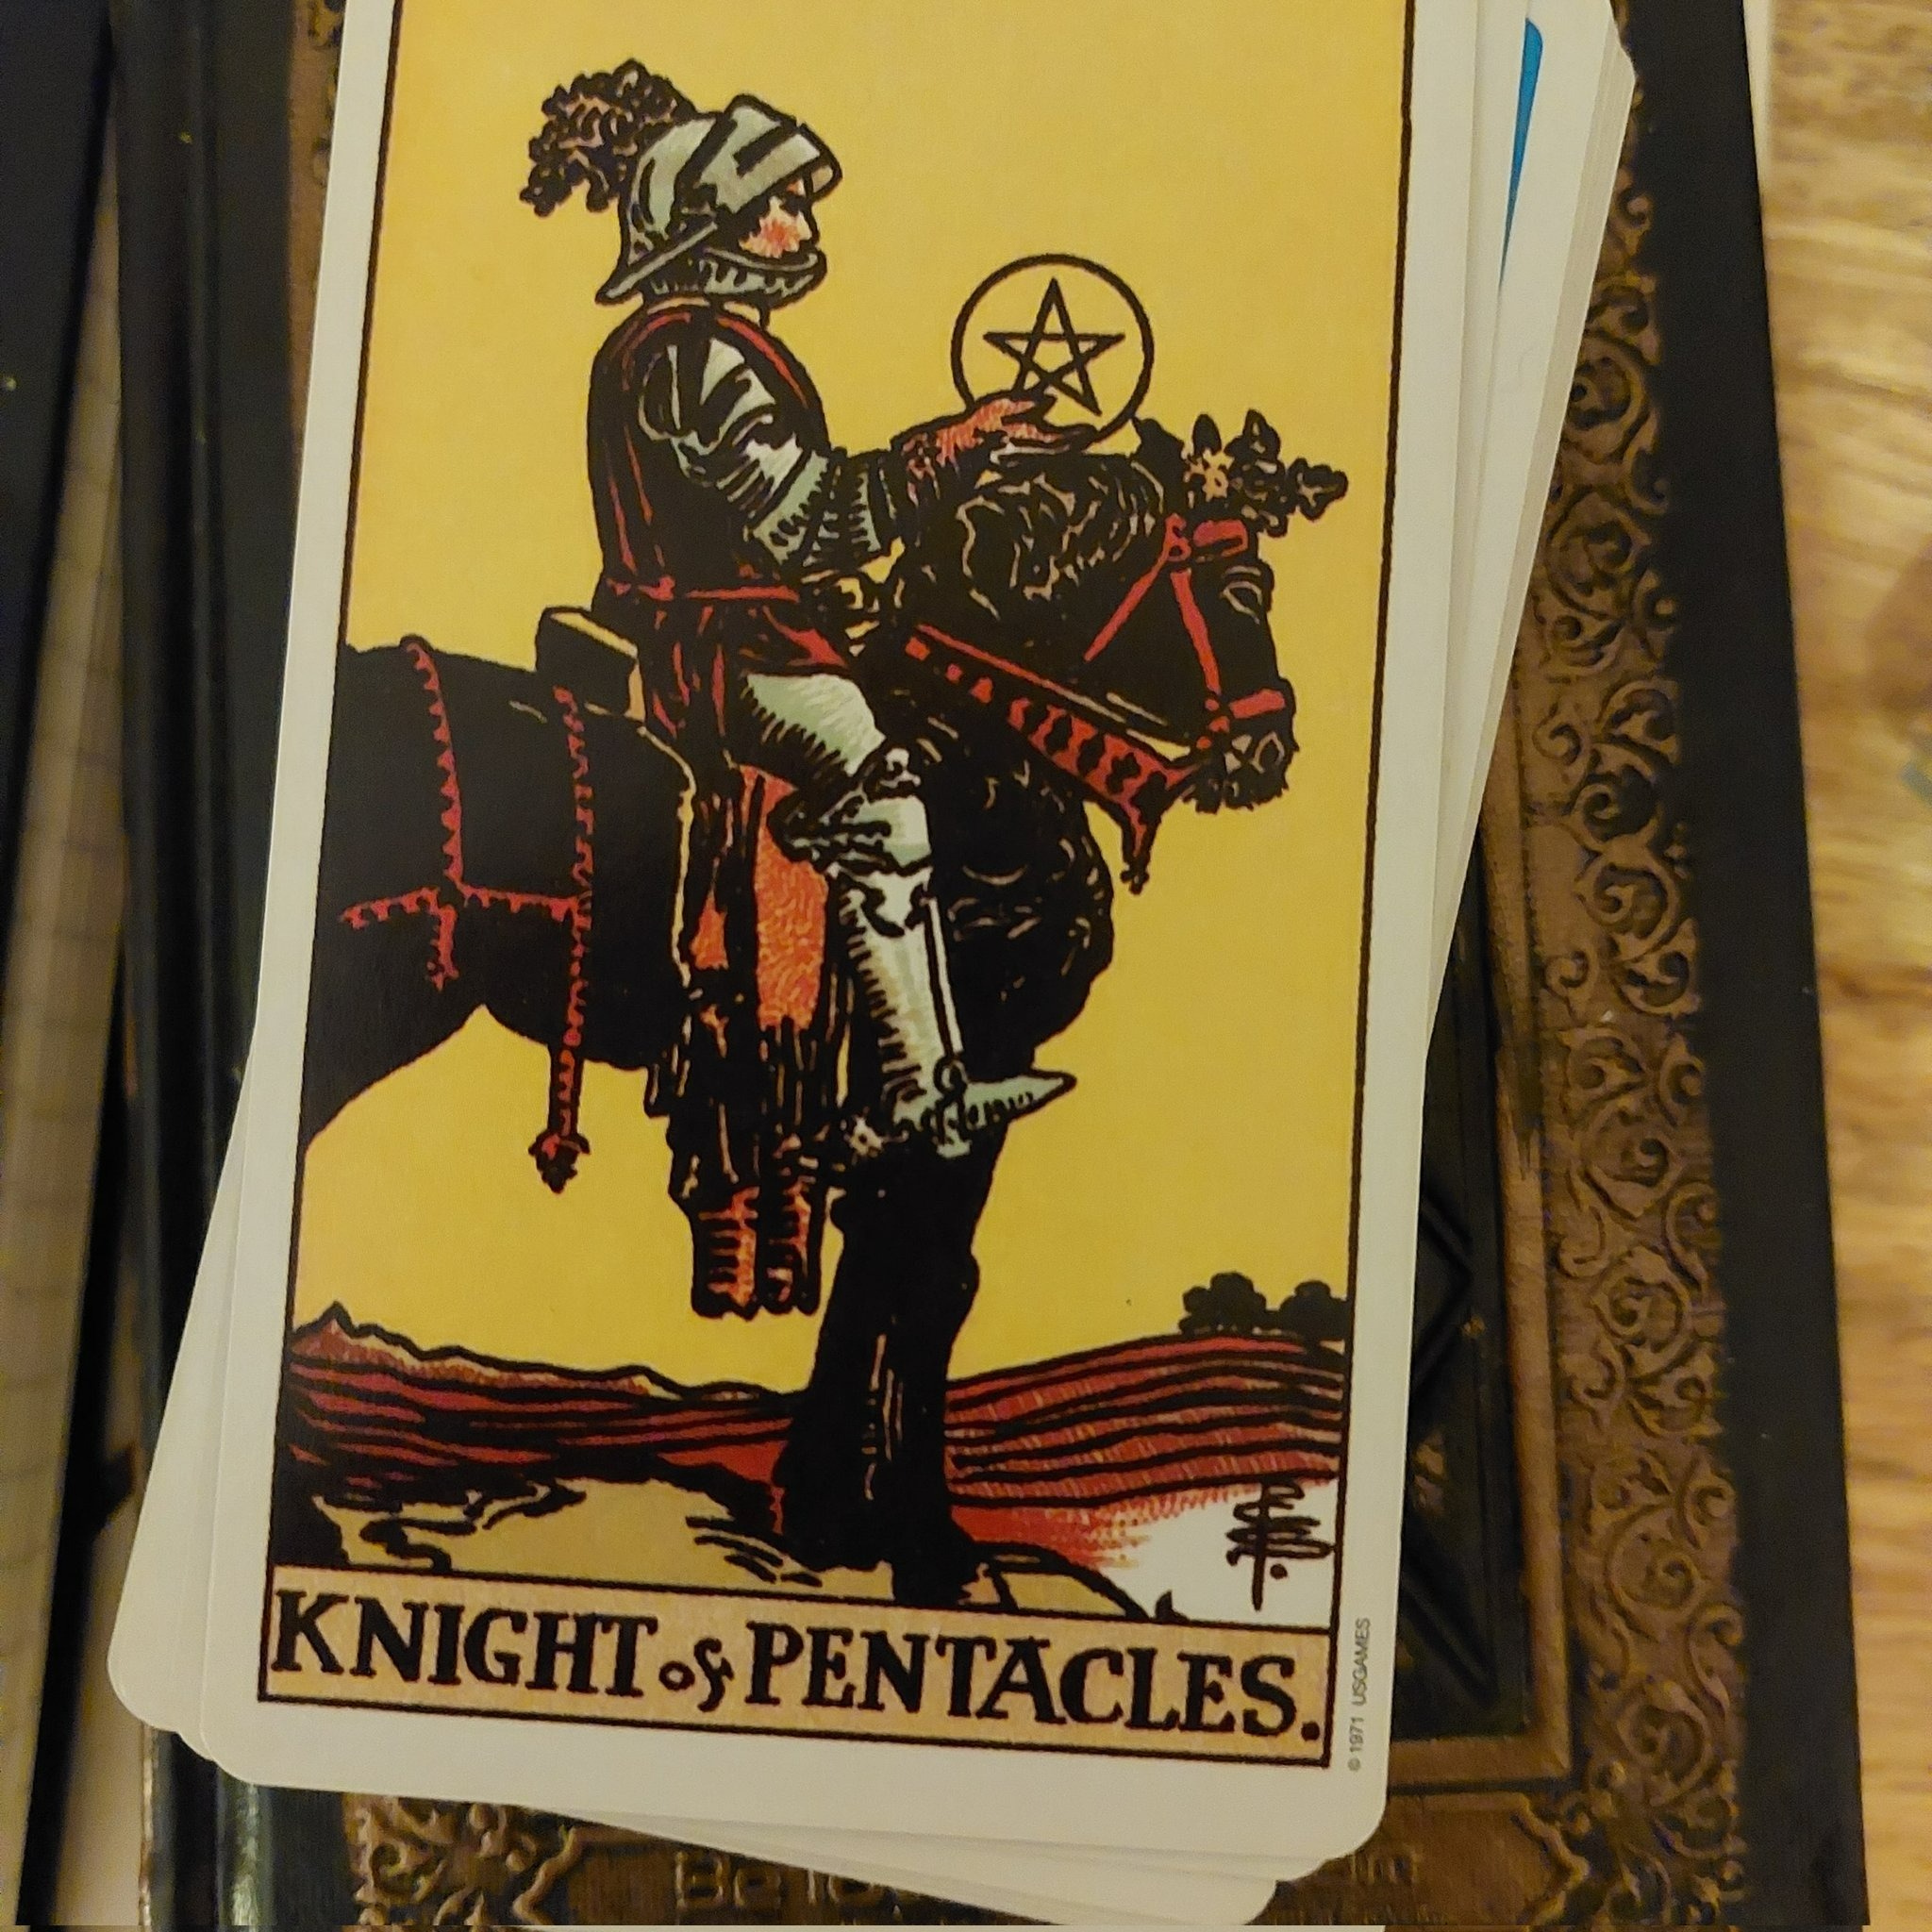 knight of pentacles hinh anh 2 - Knight of Pentacles là gì? Ý nghĩa của lá bài Knight of Pentacles trong Tarot